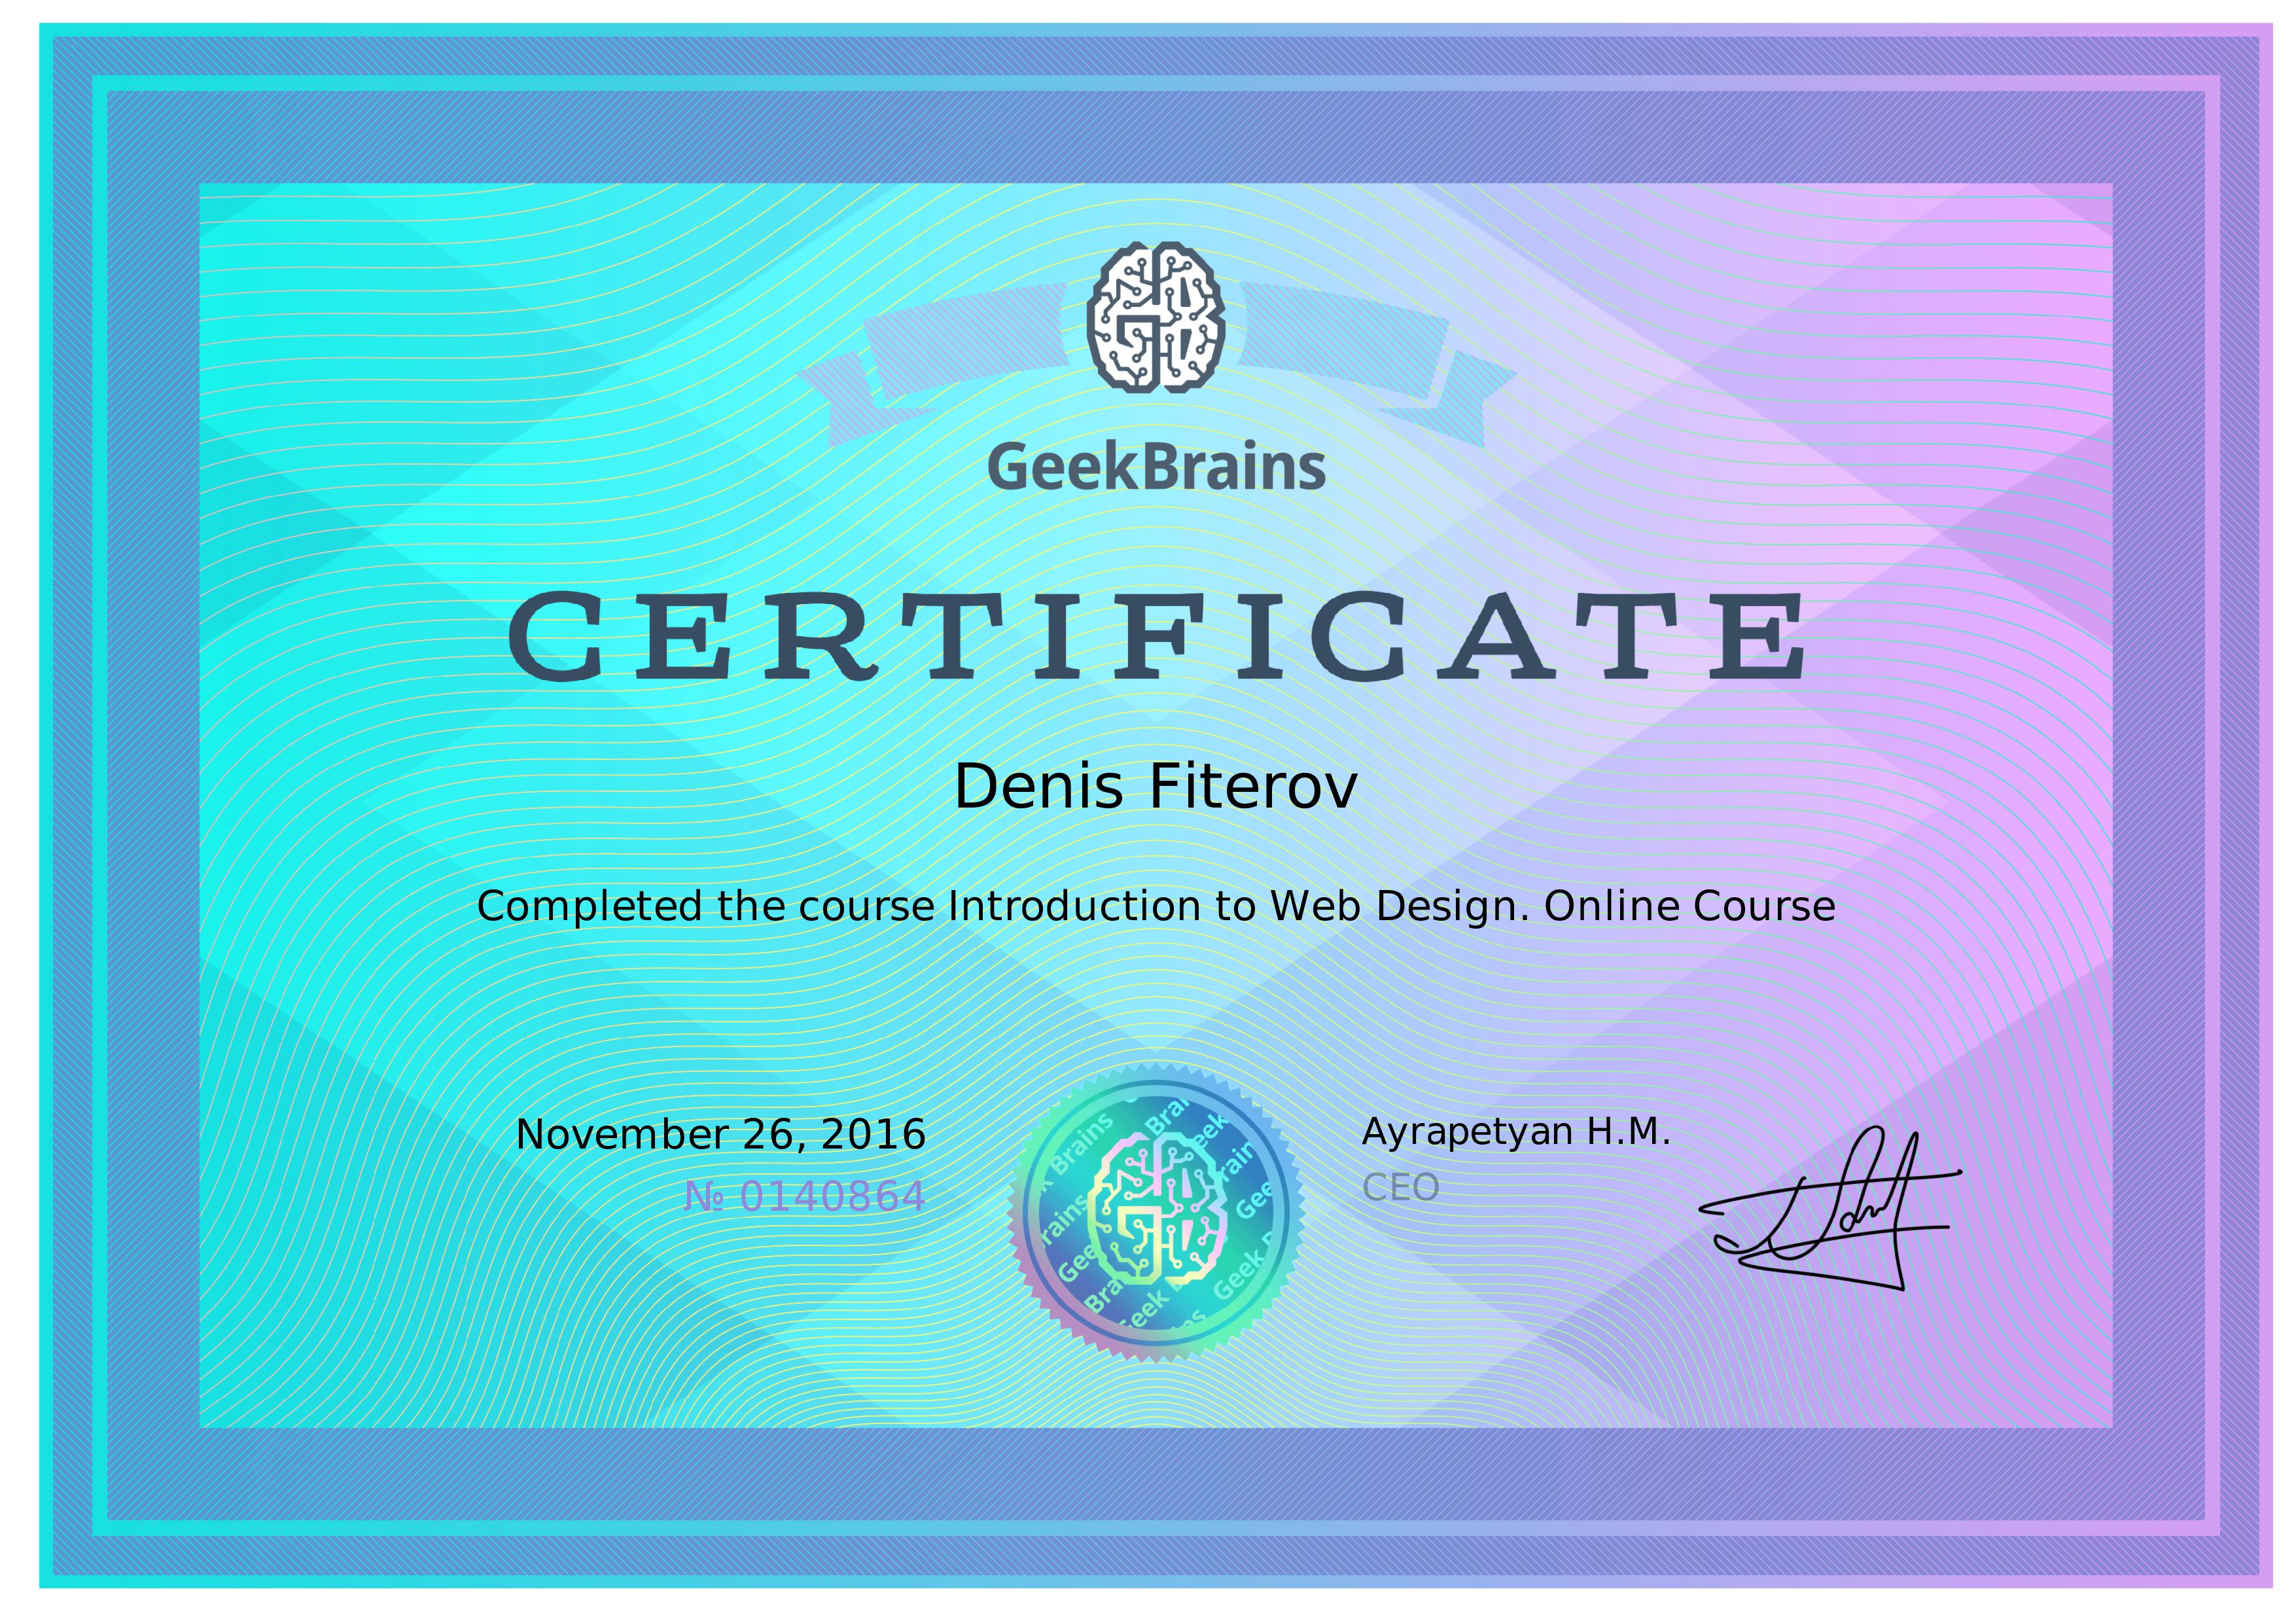 сертифицированный специалист по веб дизайну образовательный центр Geekbrains